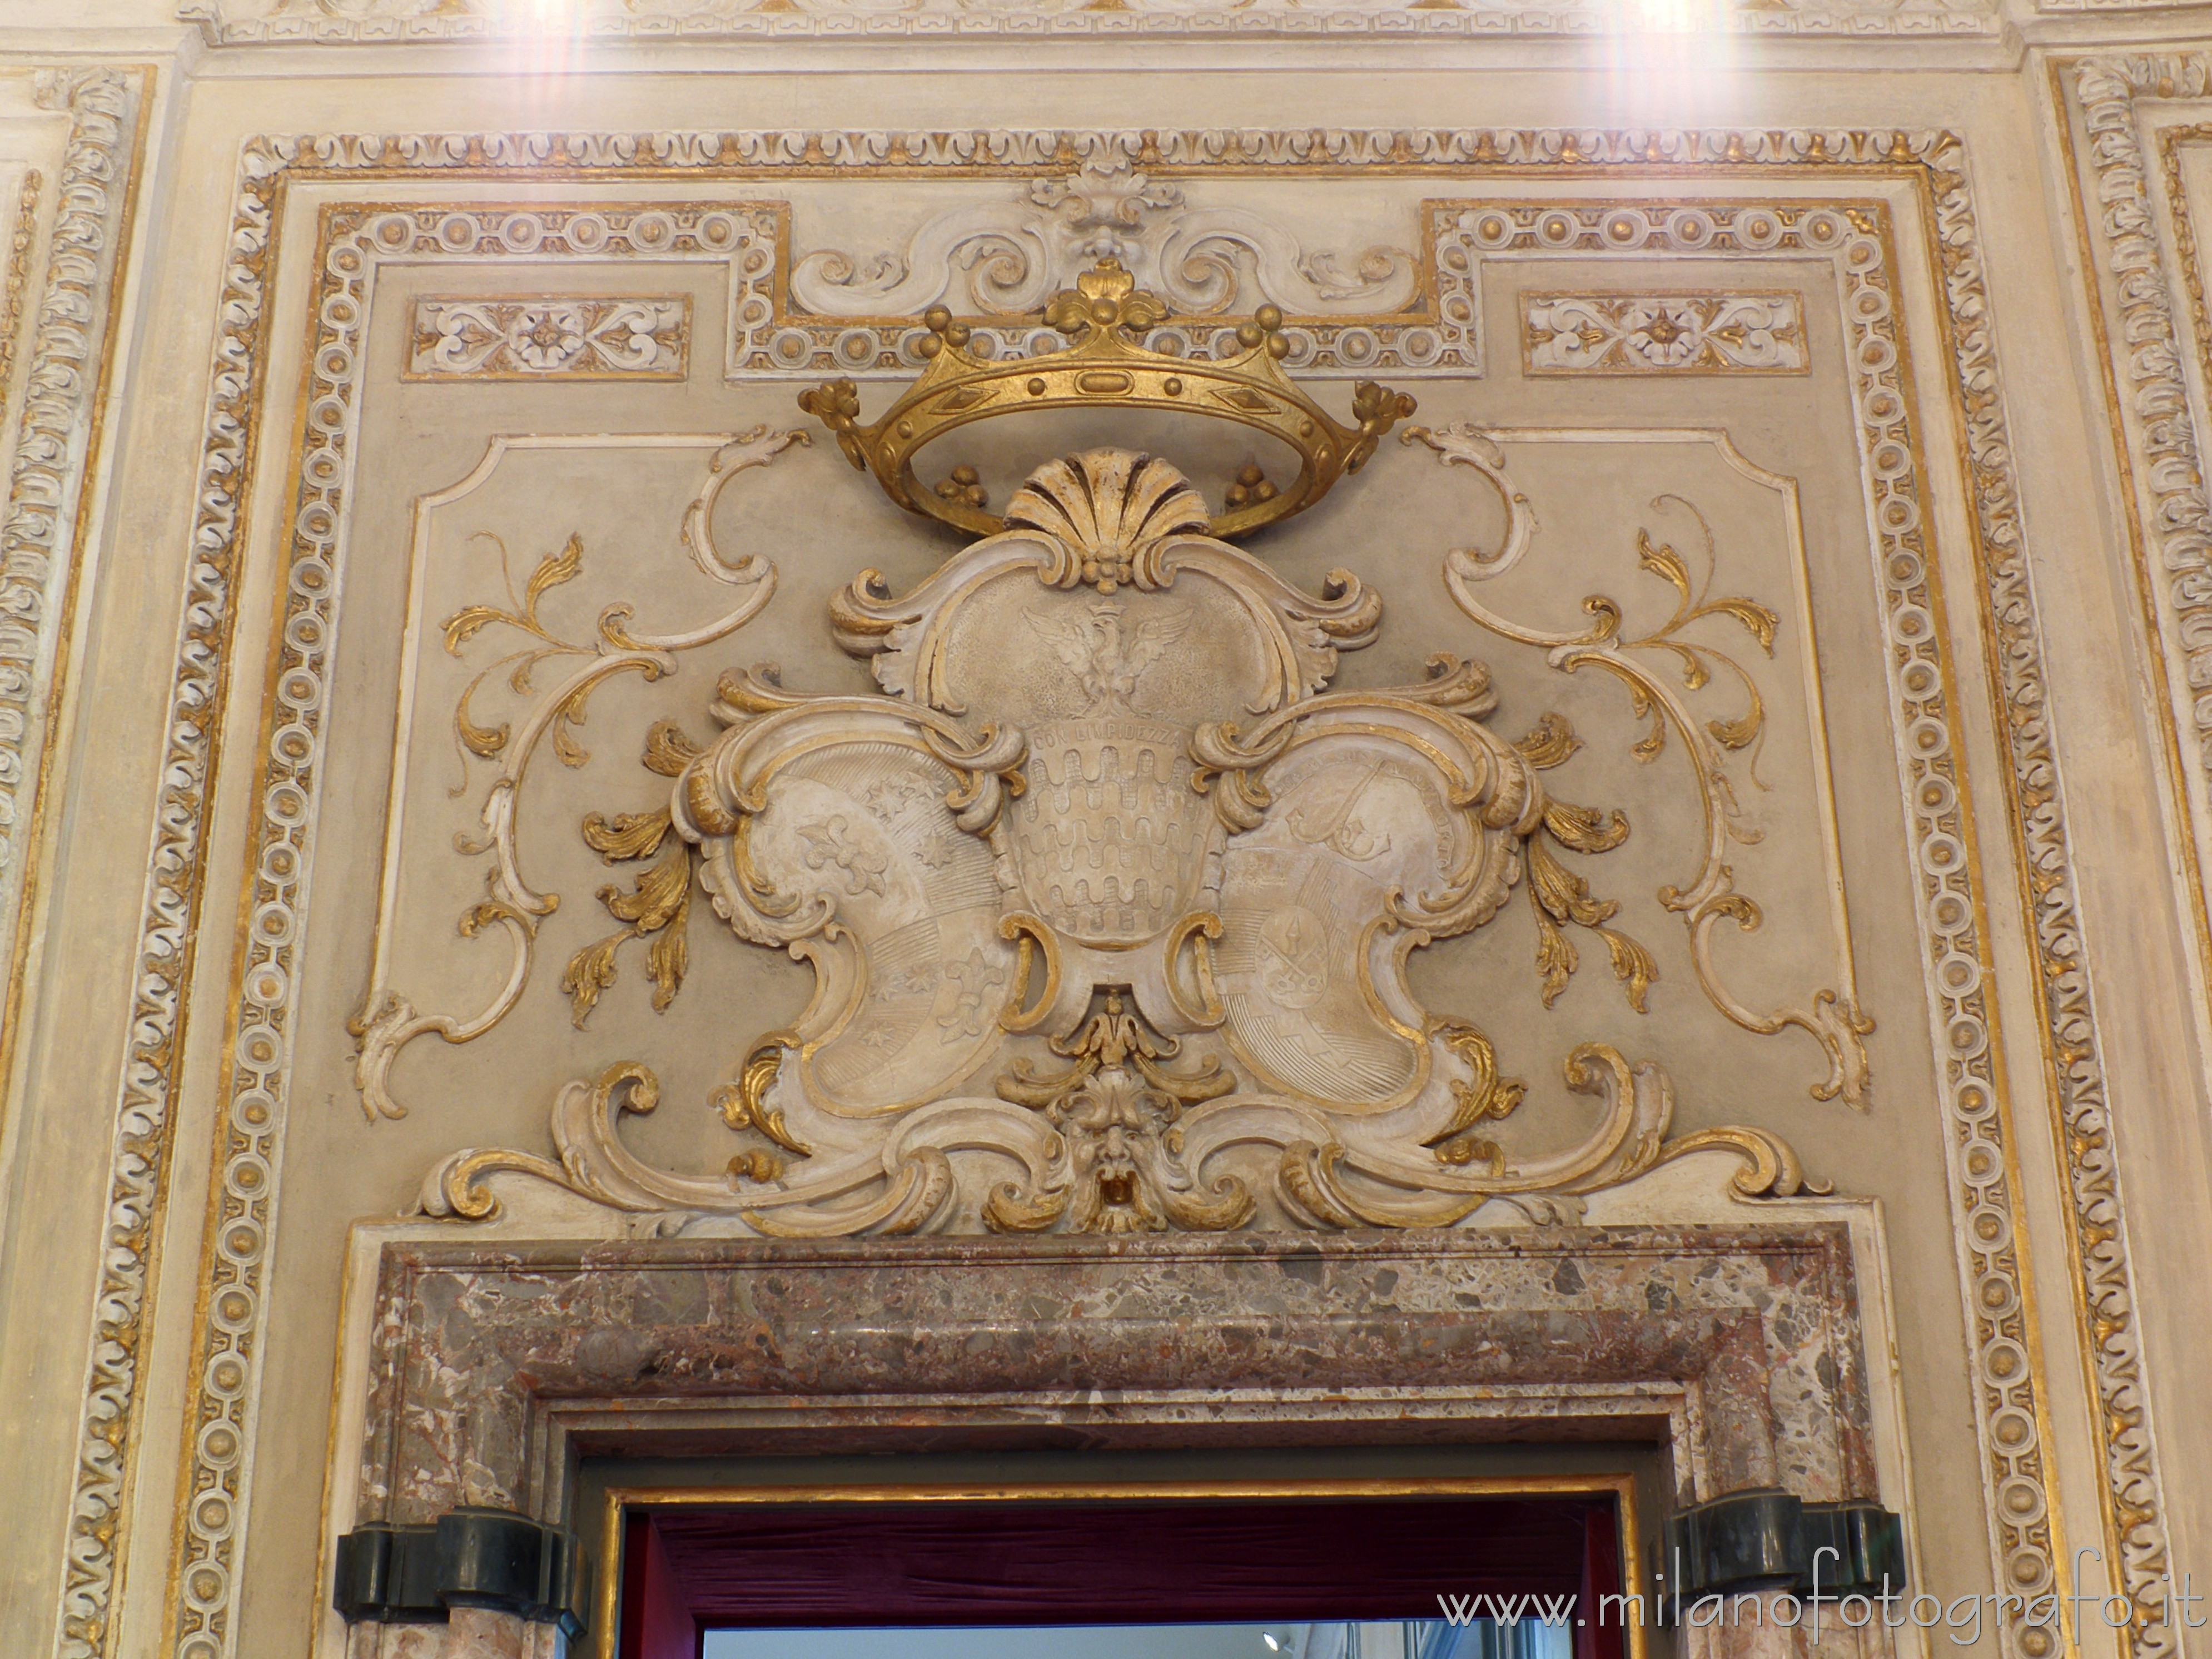 Arcore (Monza e Brianza, Italy): Coat of arms in gilded stucco in the oval hall of Villa Borromeo d'Adda - Arcore (Monza e Brianza, Italy)